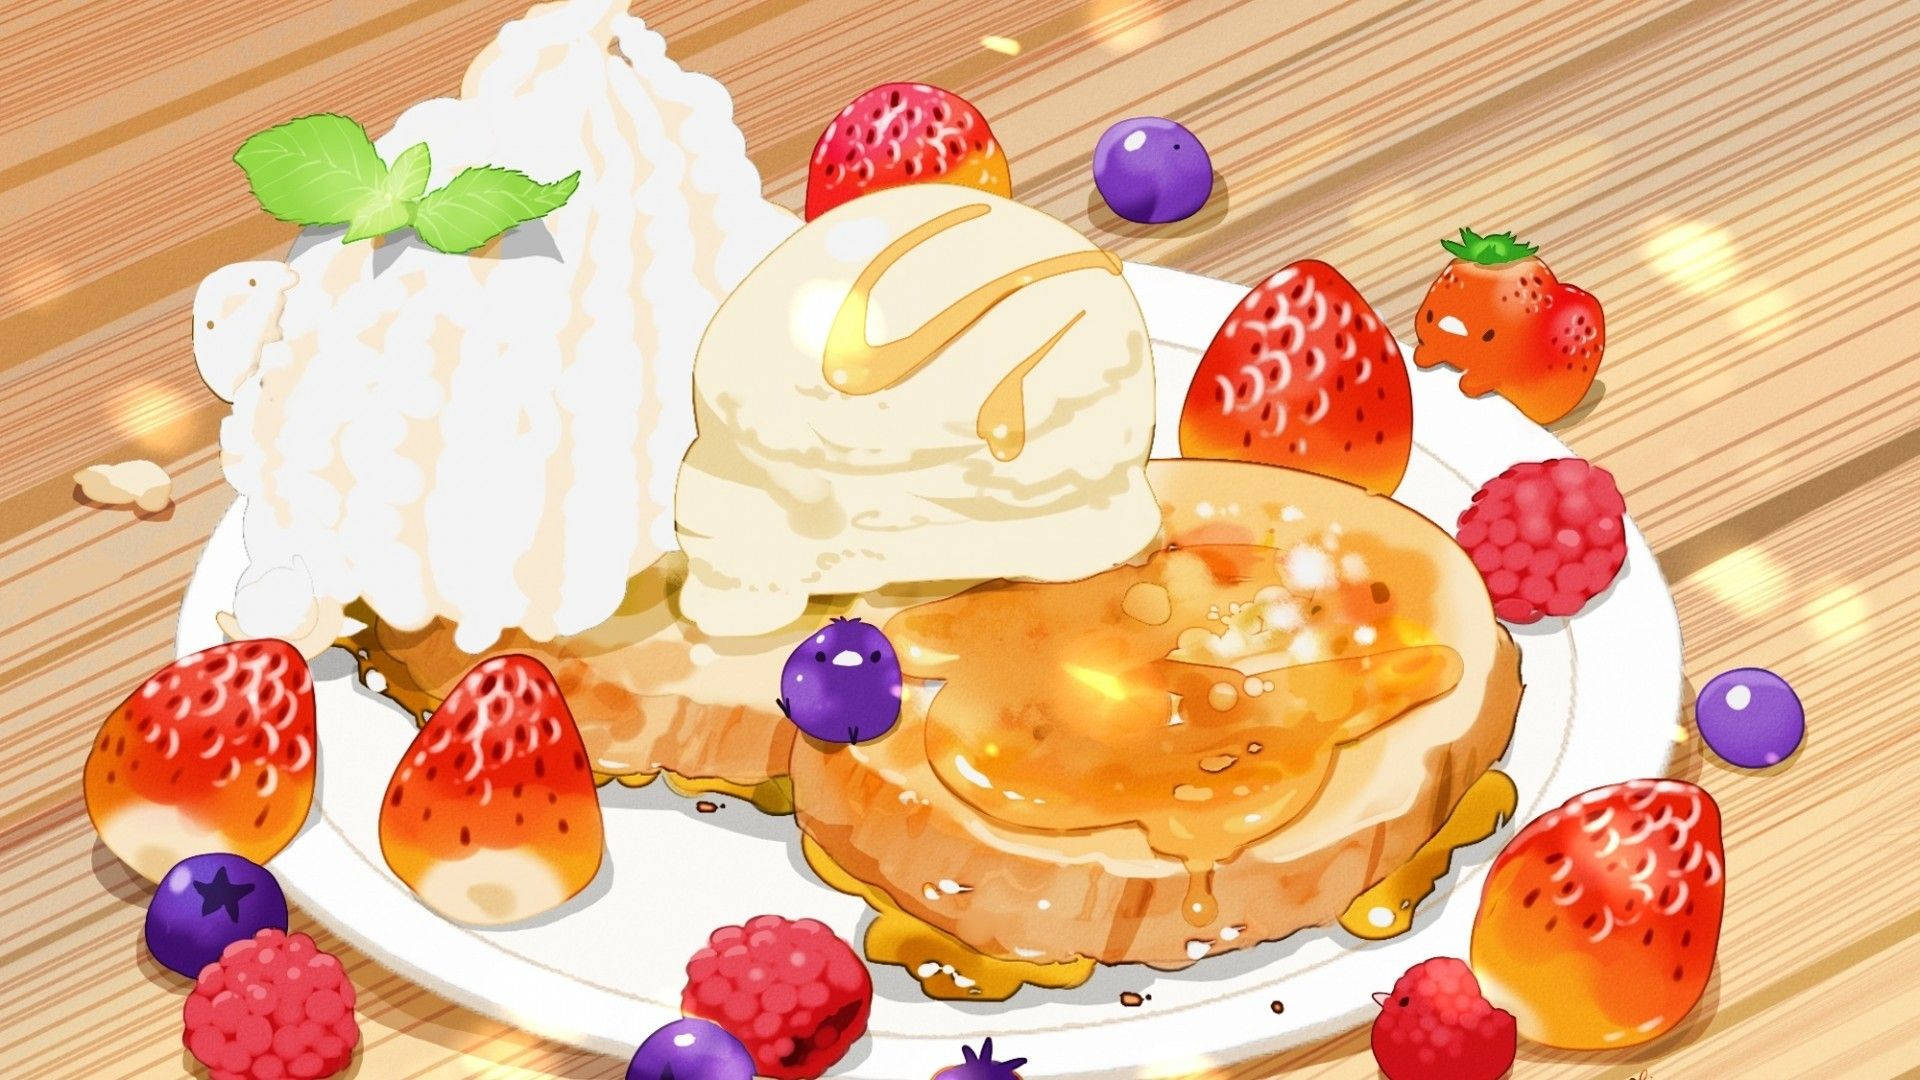 Enchanting Anime-Inspired Dessert Spread Wallpaper